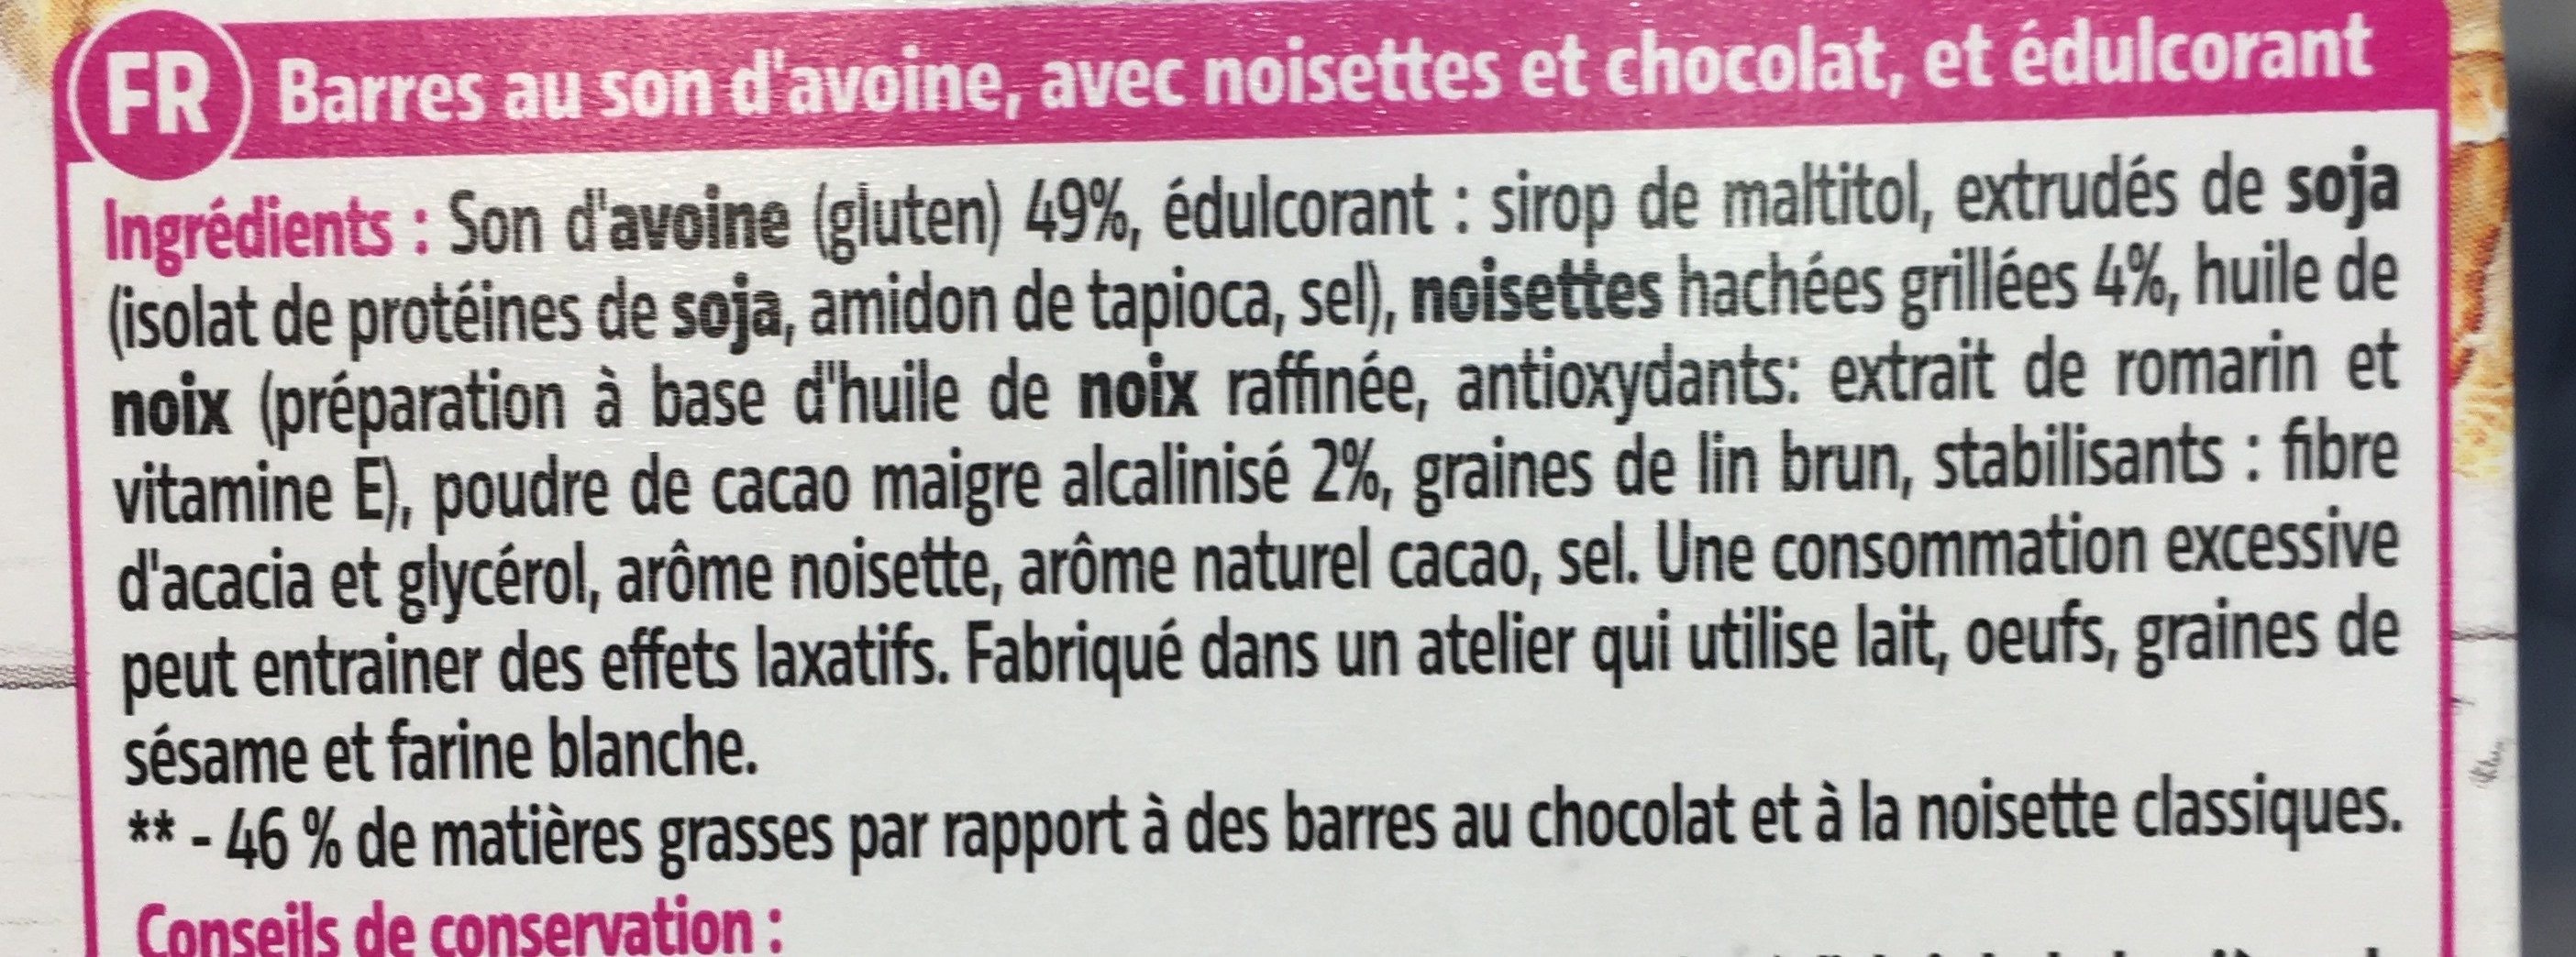 Dukan barres chocolat et noisettes - Ingrédients